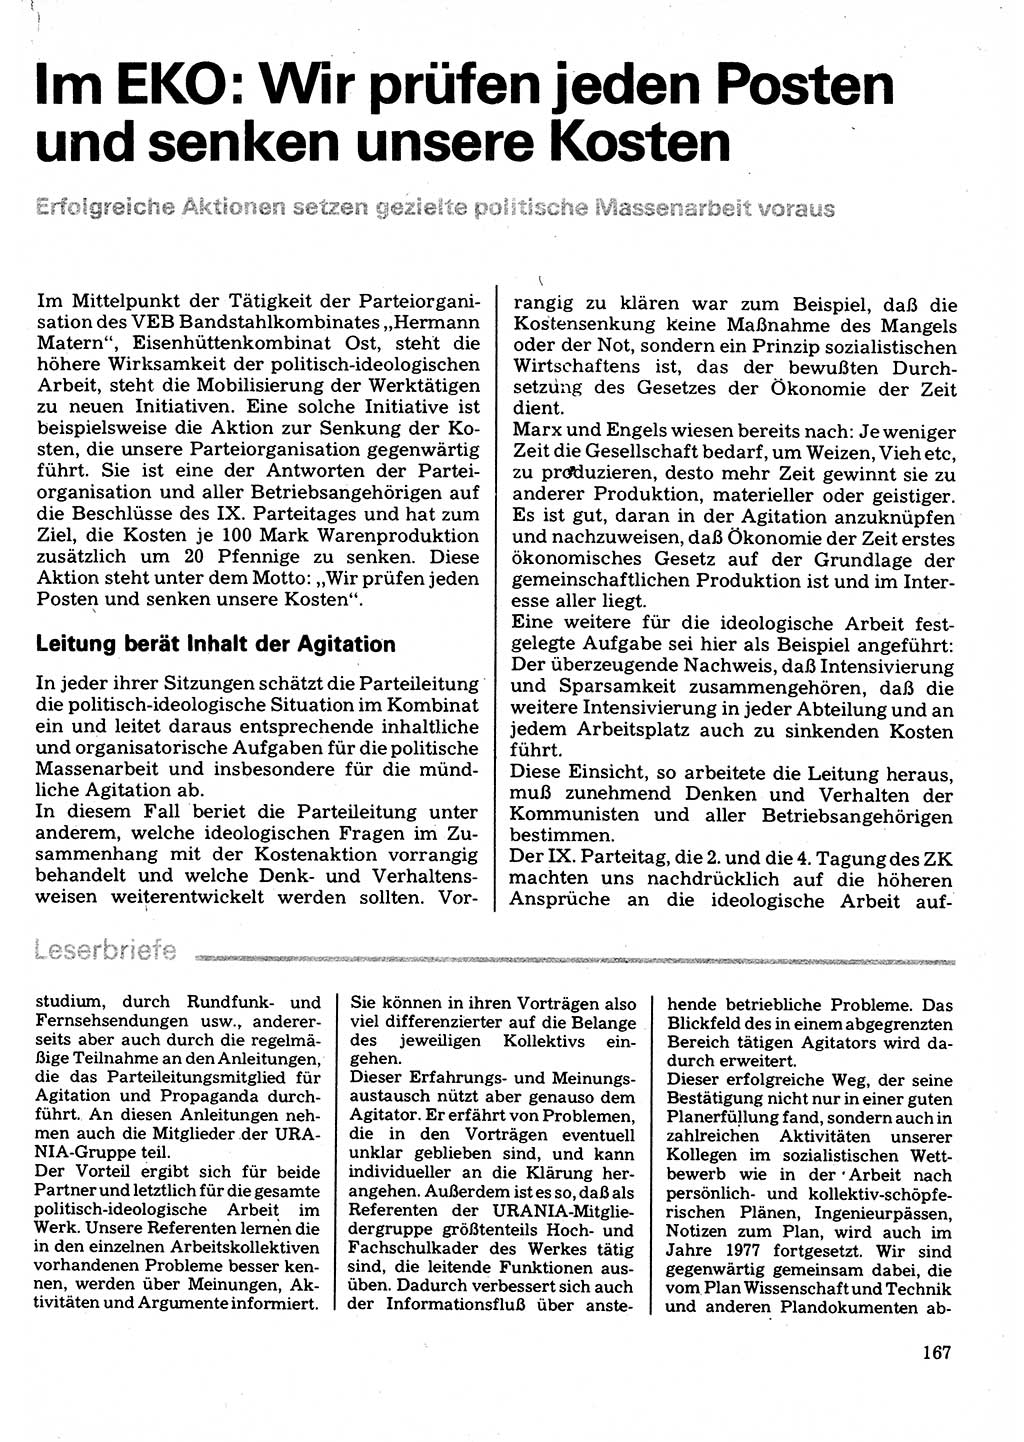 Neuer Weg (NW), Organ des Zentralkomitees (ZK) der SED (Sozialistische Einheitspartei Deutschlands) für Fragen des Parteilebens, 32. Jahrgang [Deutsche Demokratische Republik (DDR)] 1977, Seite 167 (NW ZK SED DDR 1977, S. 167)